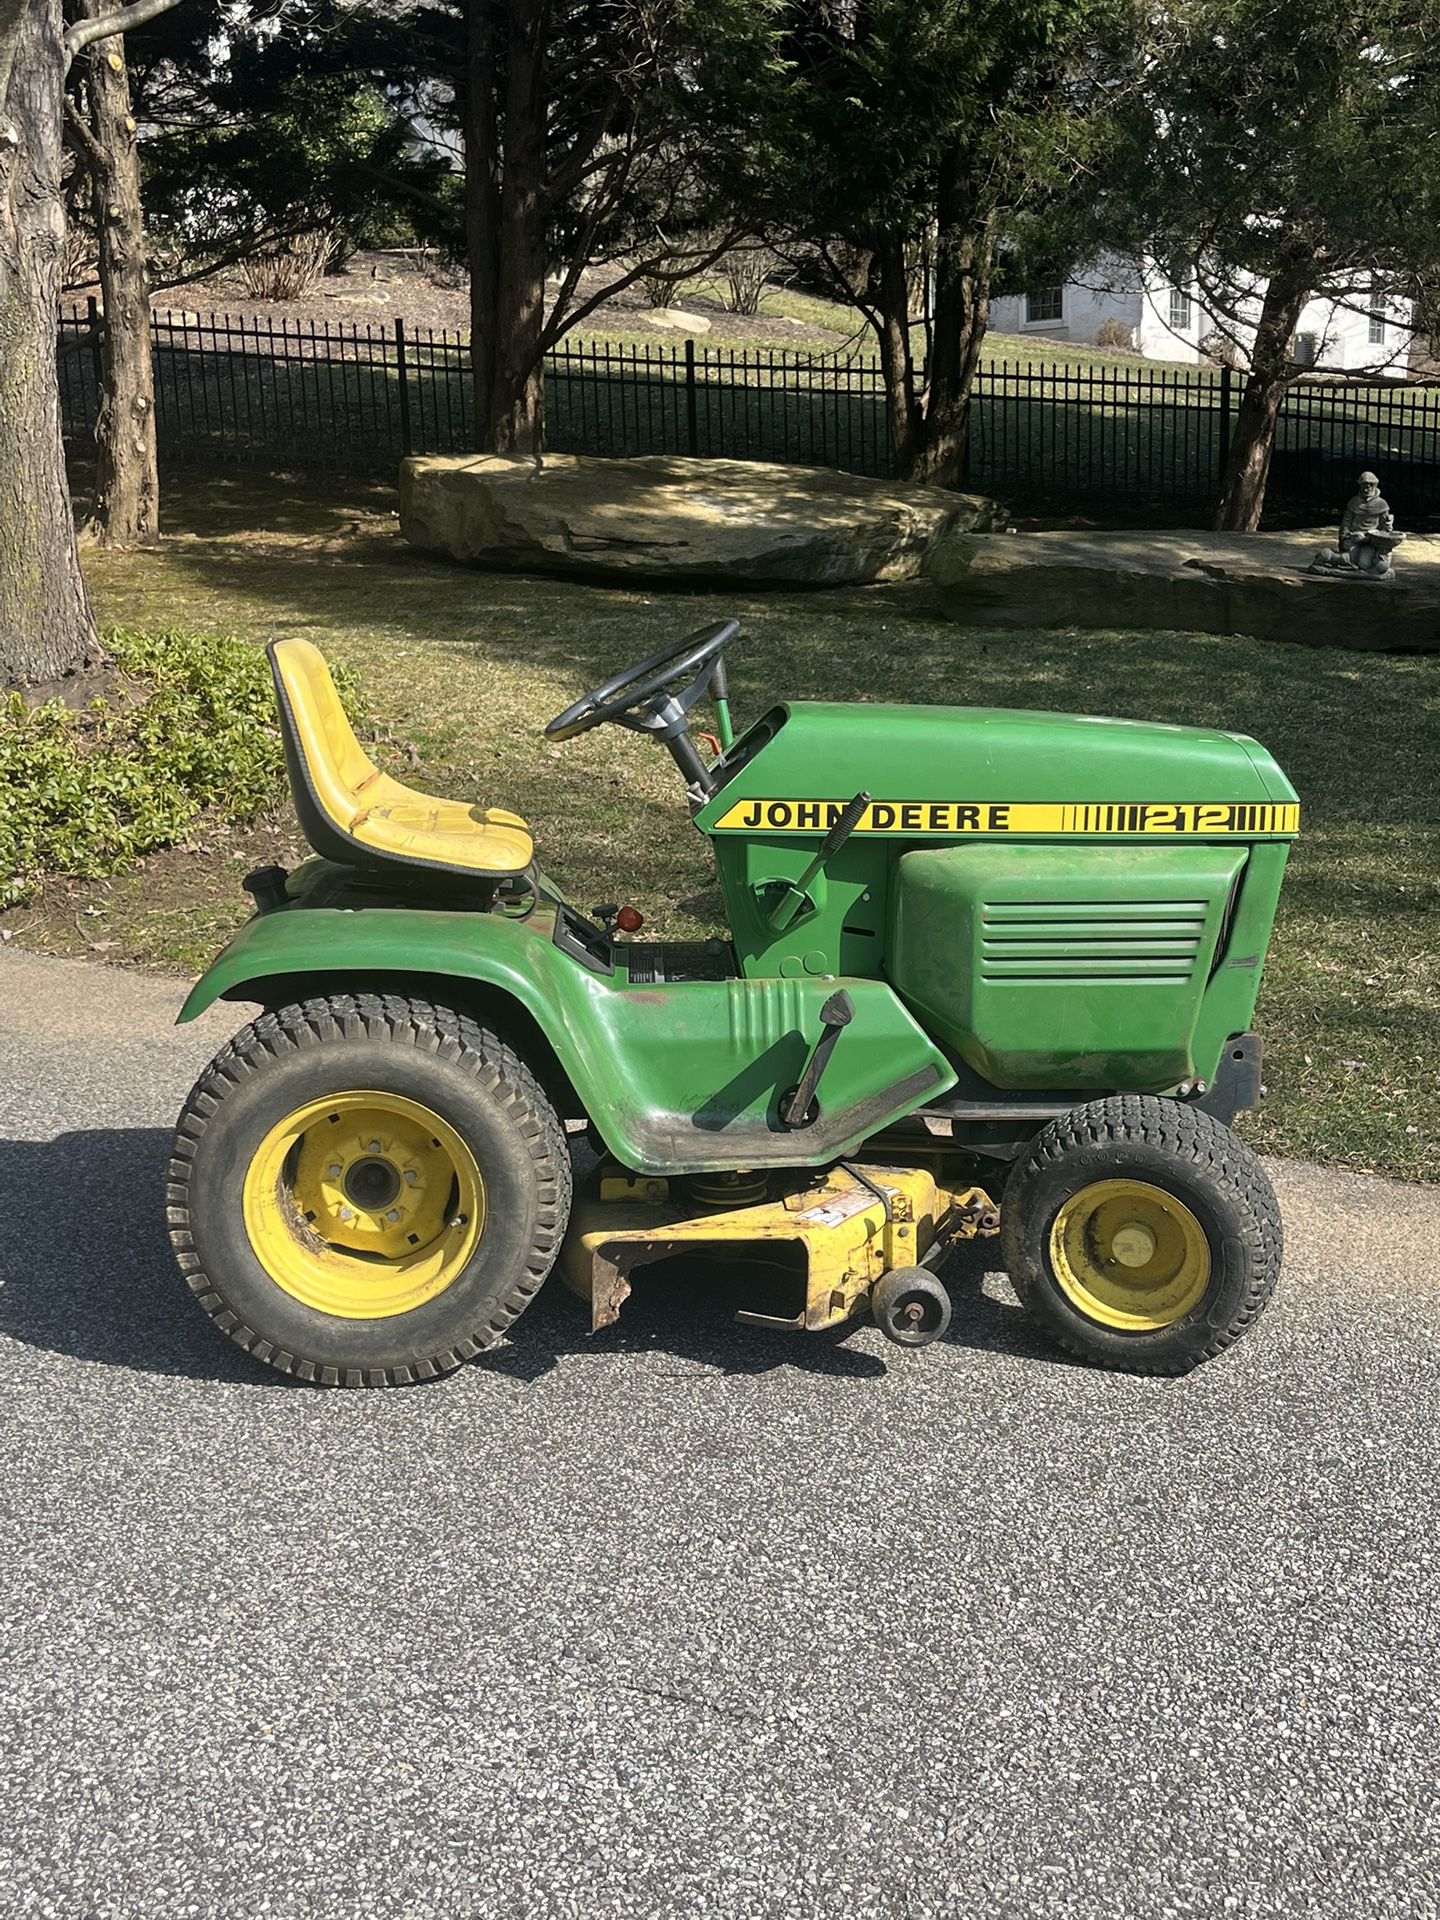 John Deere 212 Garden Tractor Riding Mower Lawnmower